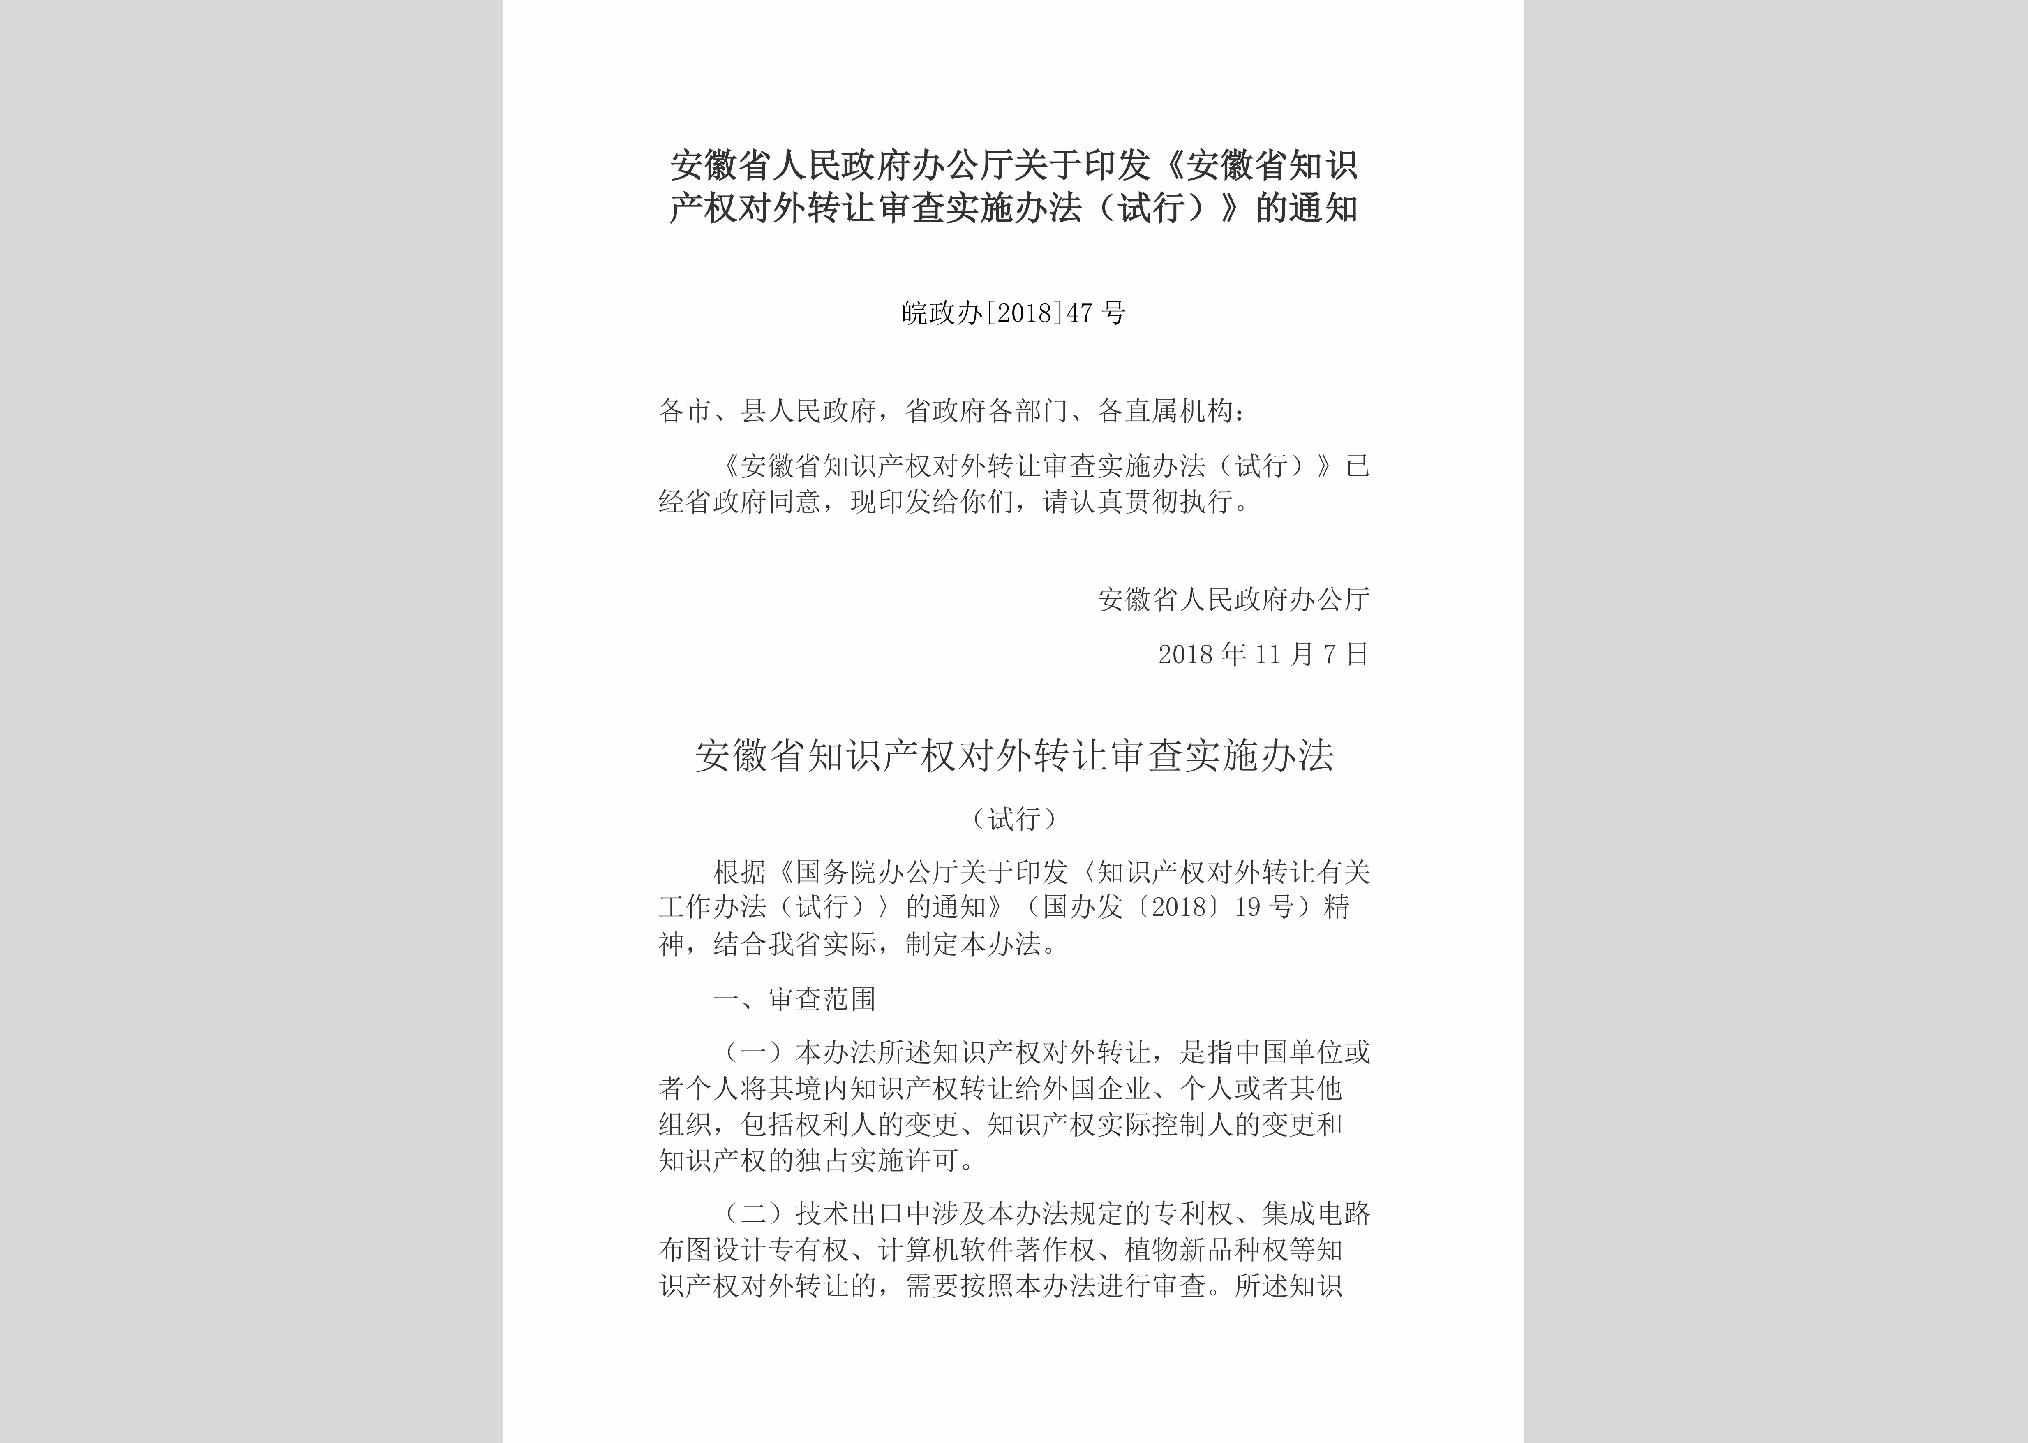 皖政办[2018]47号：安徽省人民政府办公厅关于印发《安徽省知识产权对外转让审查实施办法（试行）》的通知